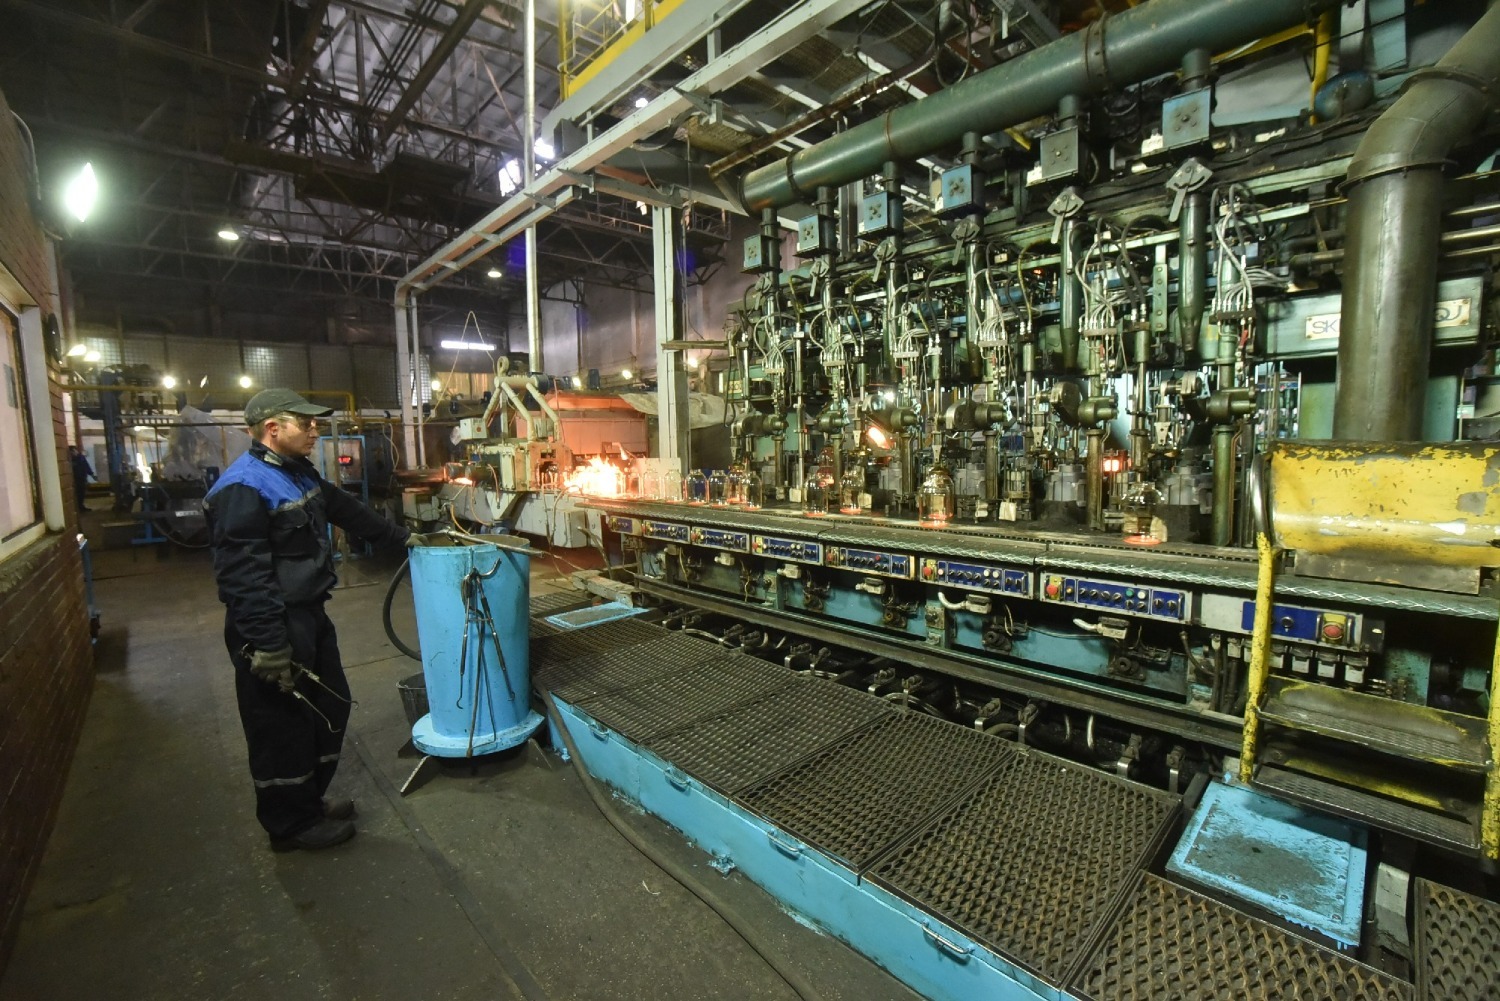 Производственные линии ООО "Сибирское стекло" на территории бывшего завода "Экран" в Новосибирске.